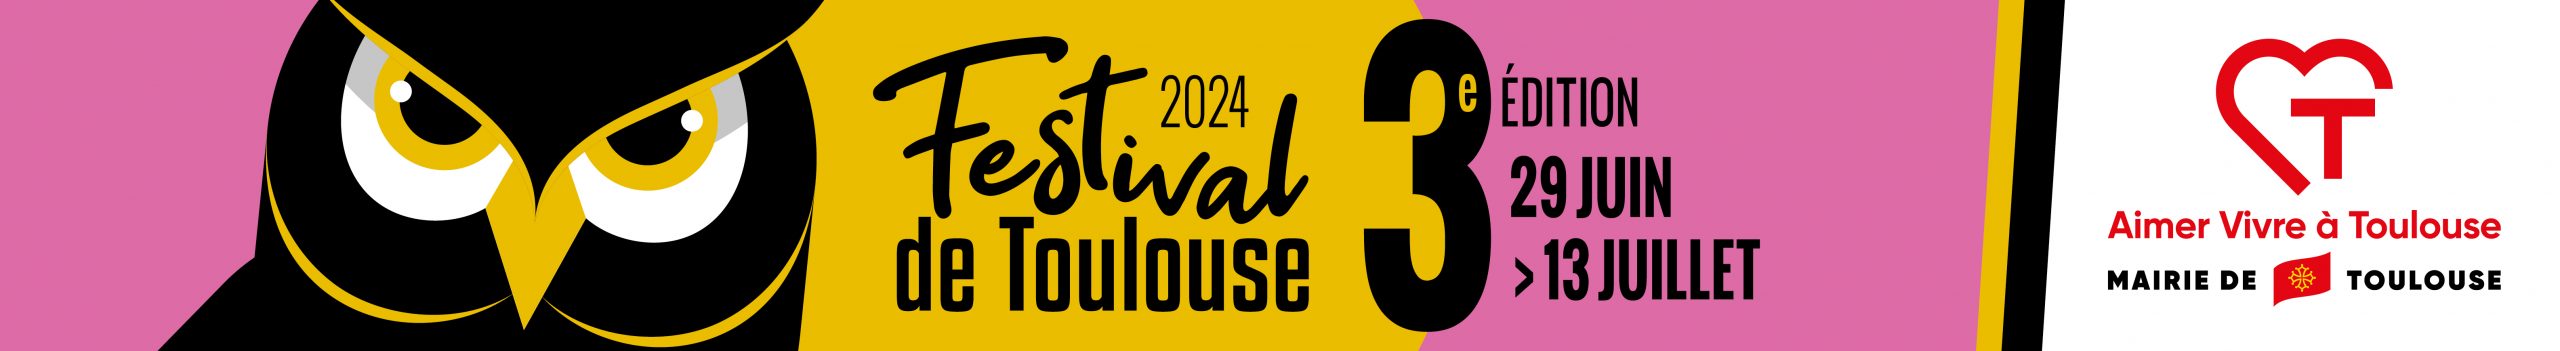 Festival De Toulouse Edition 2024 Site